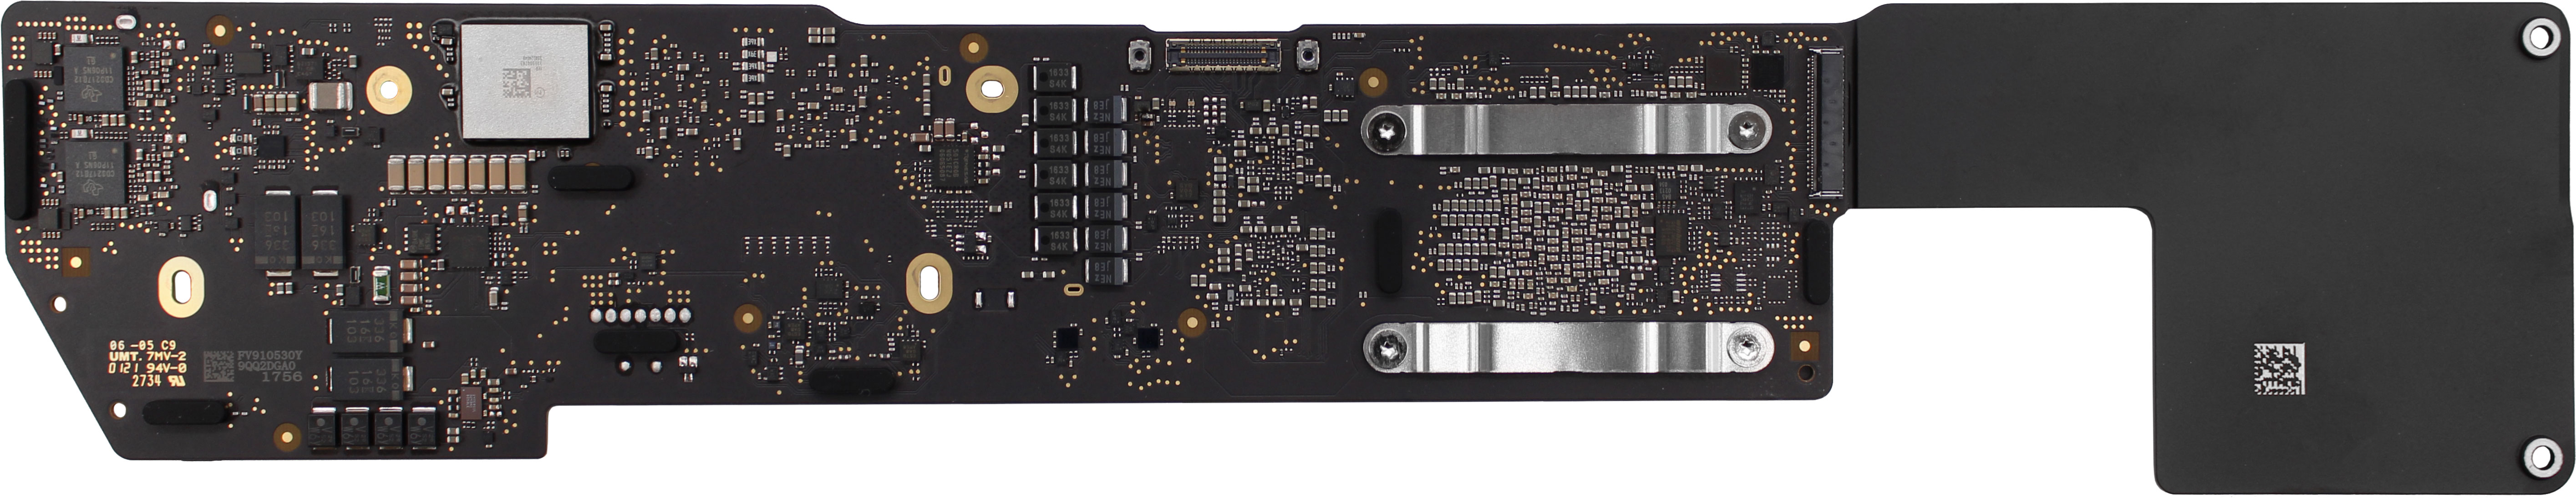 Logic Board, M1, 8-core, 8GB, 1TB 661-16820